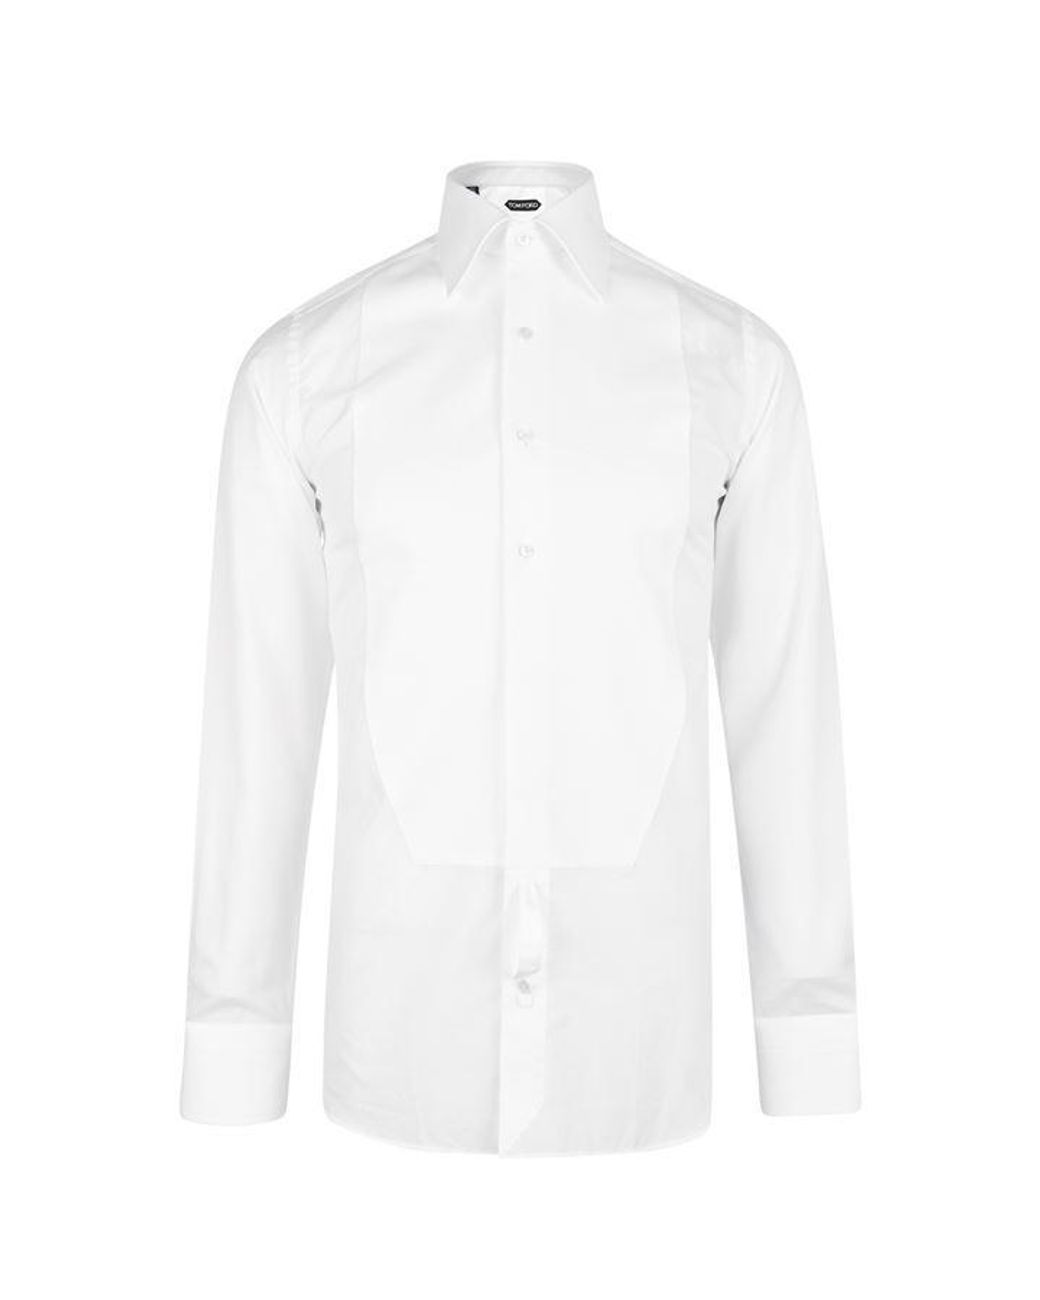 Tom Ford Panel Shirt in White for Men - Lyst